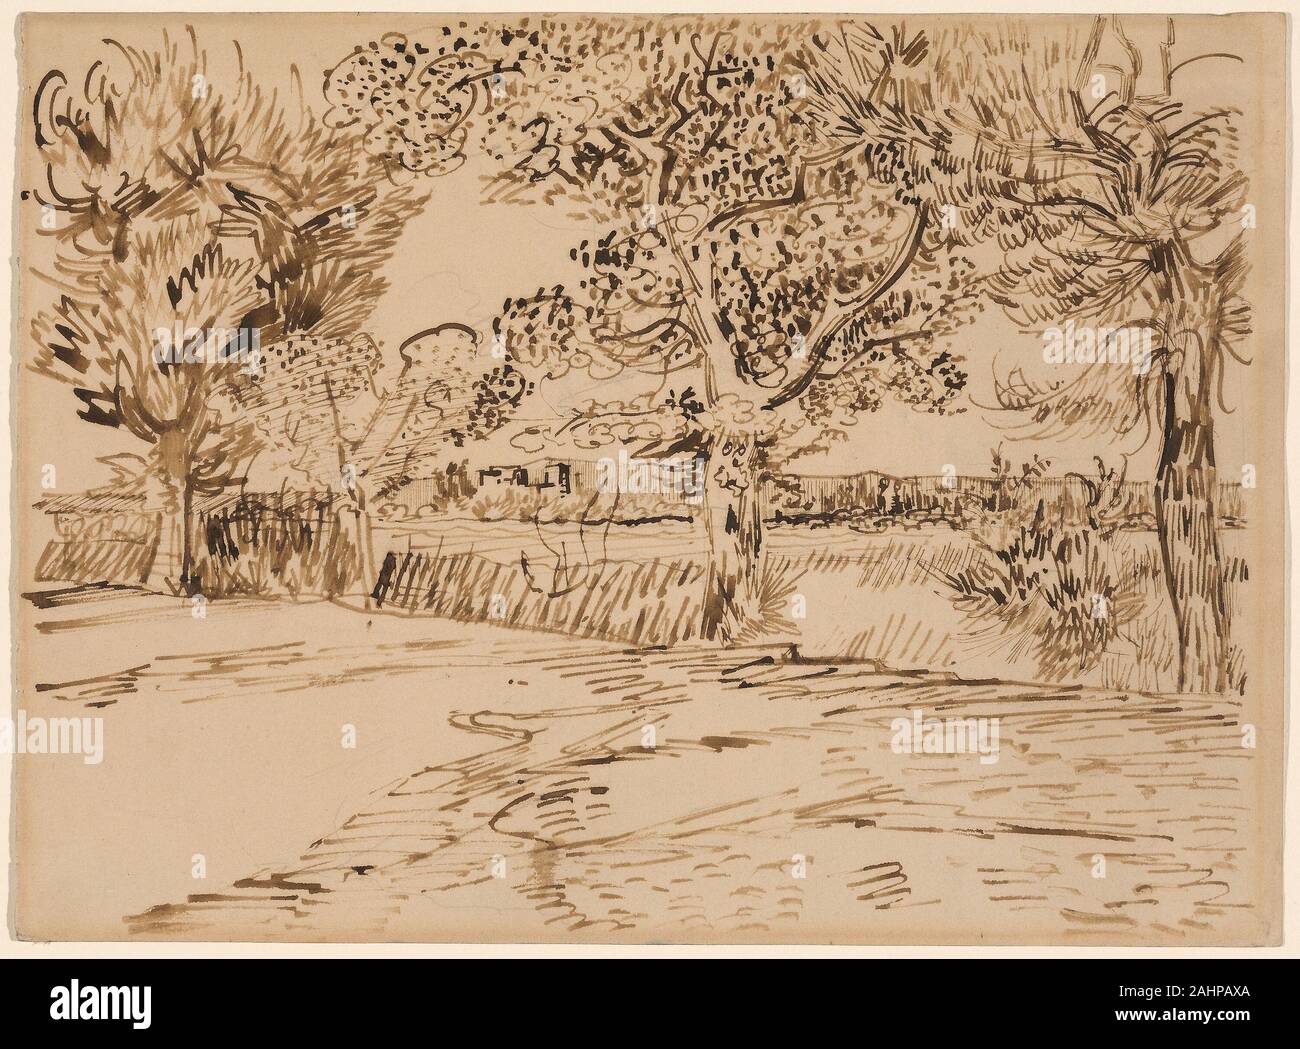 Vincent van Gogh. Landschaft in Arles. 1888. Niederlande. Pen und brauner Tinte über Graphit auf Creme webte Papier Stockfoto